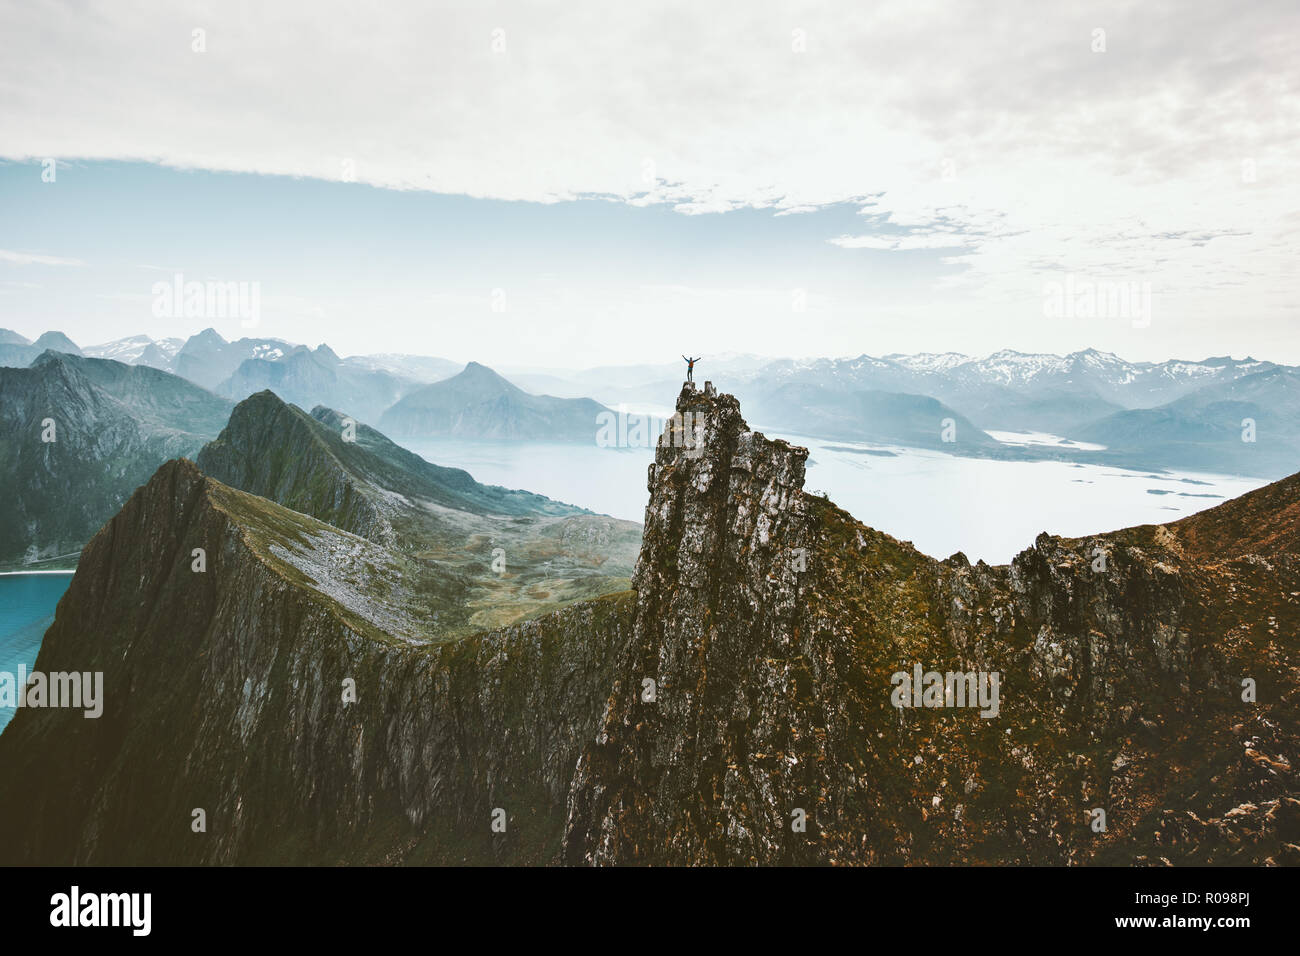 Norwegen Bergsteigen reisen Mann stand auf einer Klippe Berg über dem Fjord Abenteuer Klettern extreme lifestyle Reise Urlaub Luftbild landsca Stockfoto